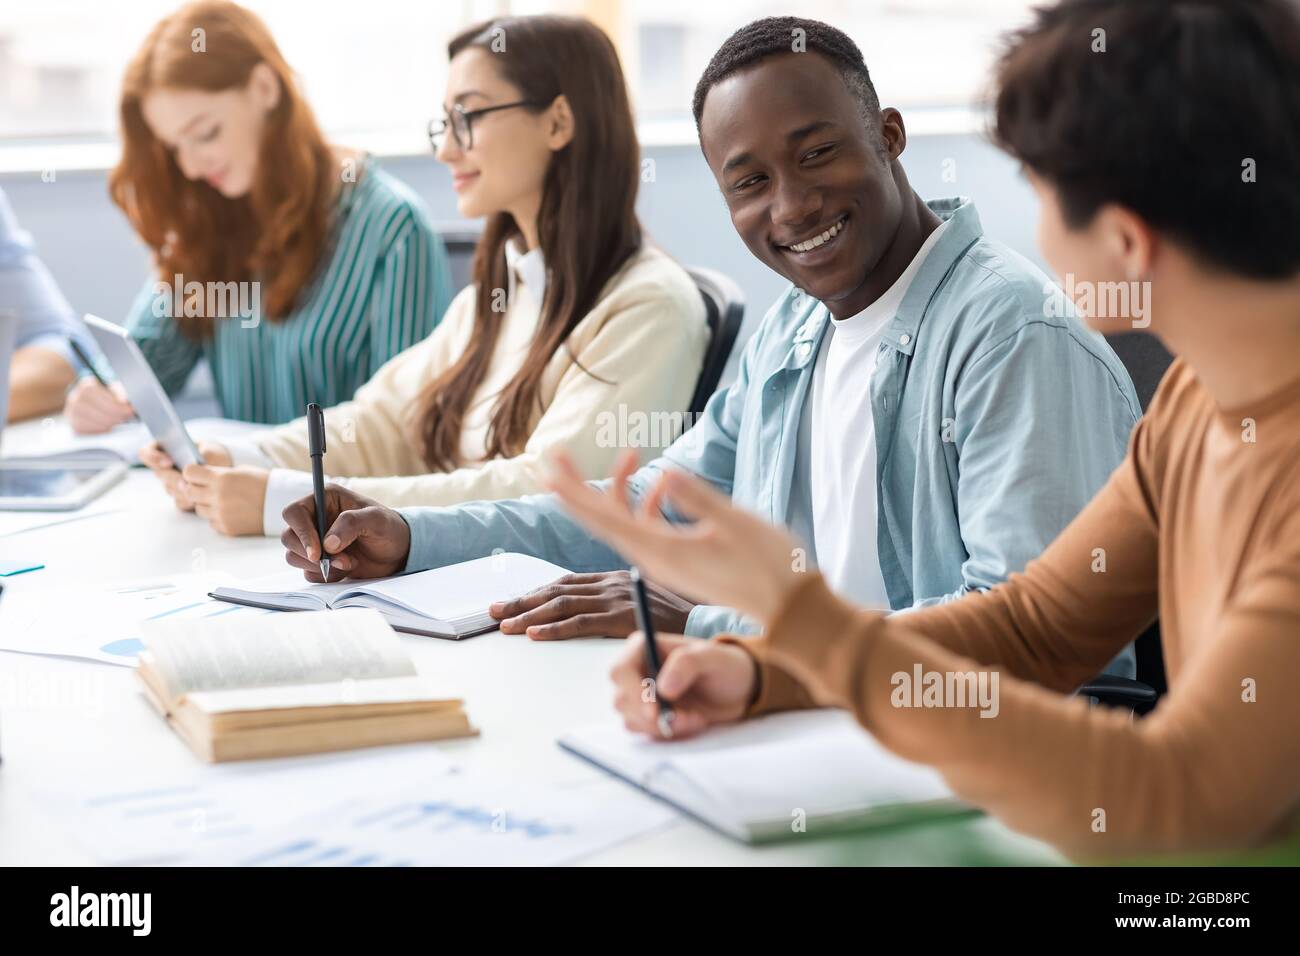 Eine vielfältige Gruppe von Studenten, die am Schreibtisch sitzen, schreiben und sprechen Stockfoto